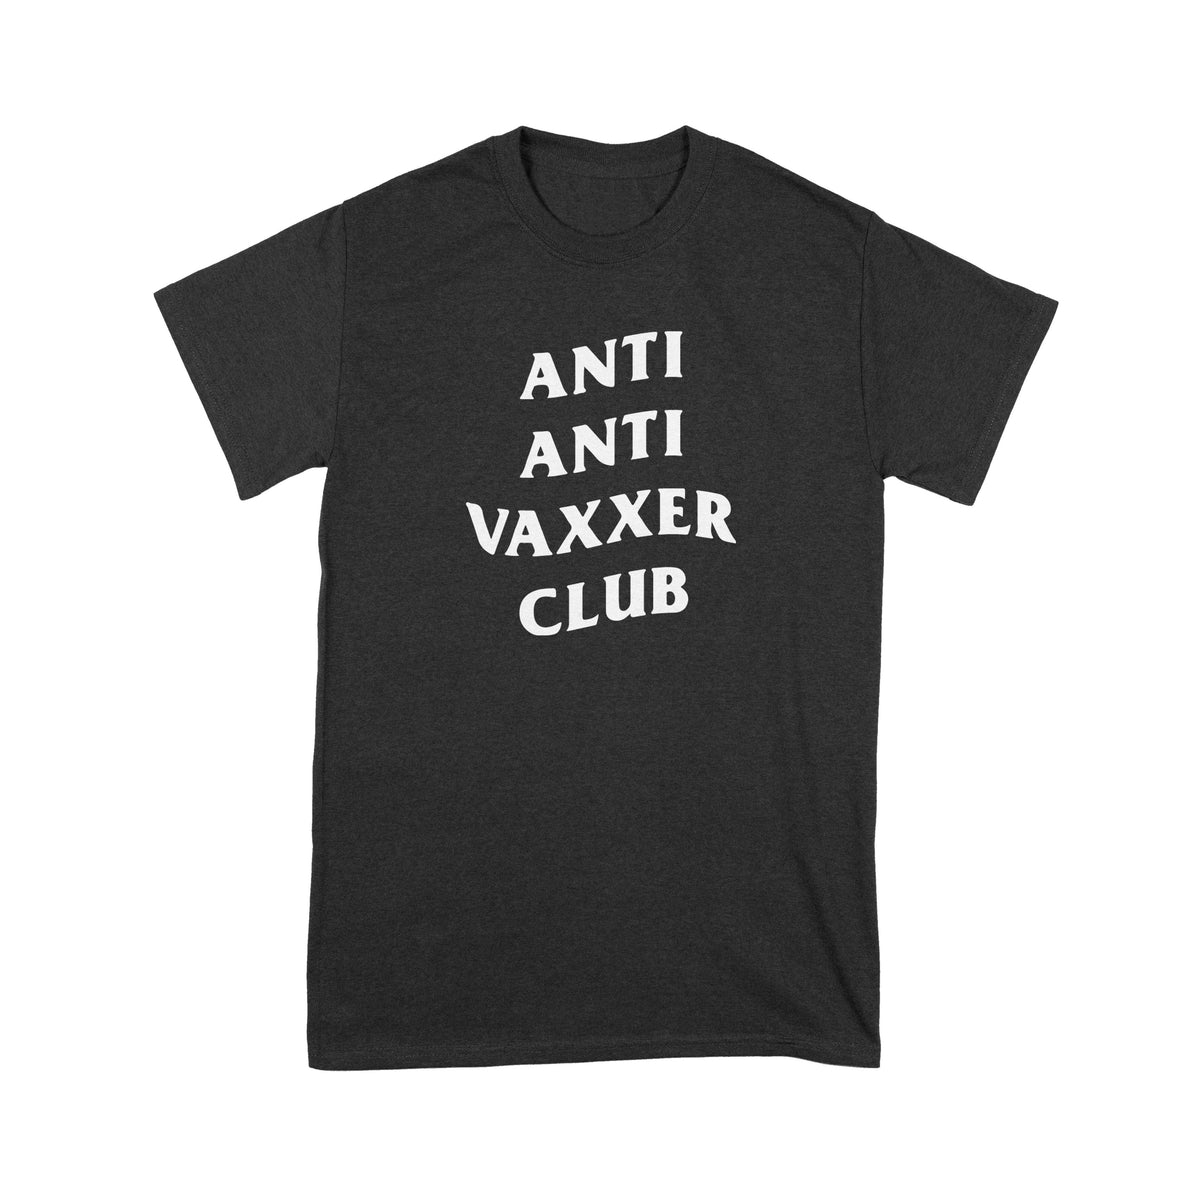 Camiseta Anti Vaxxer Club